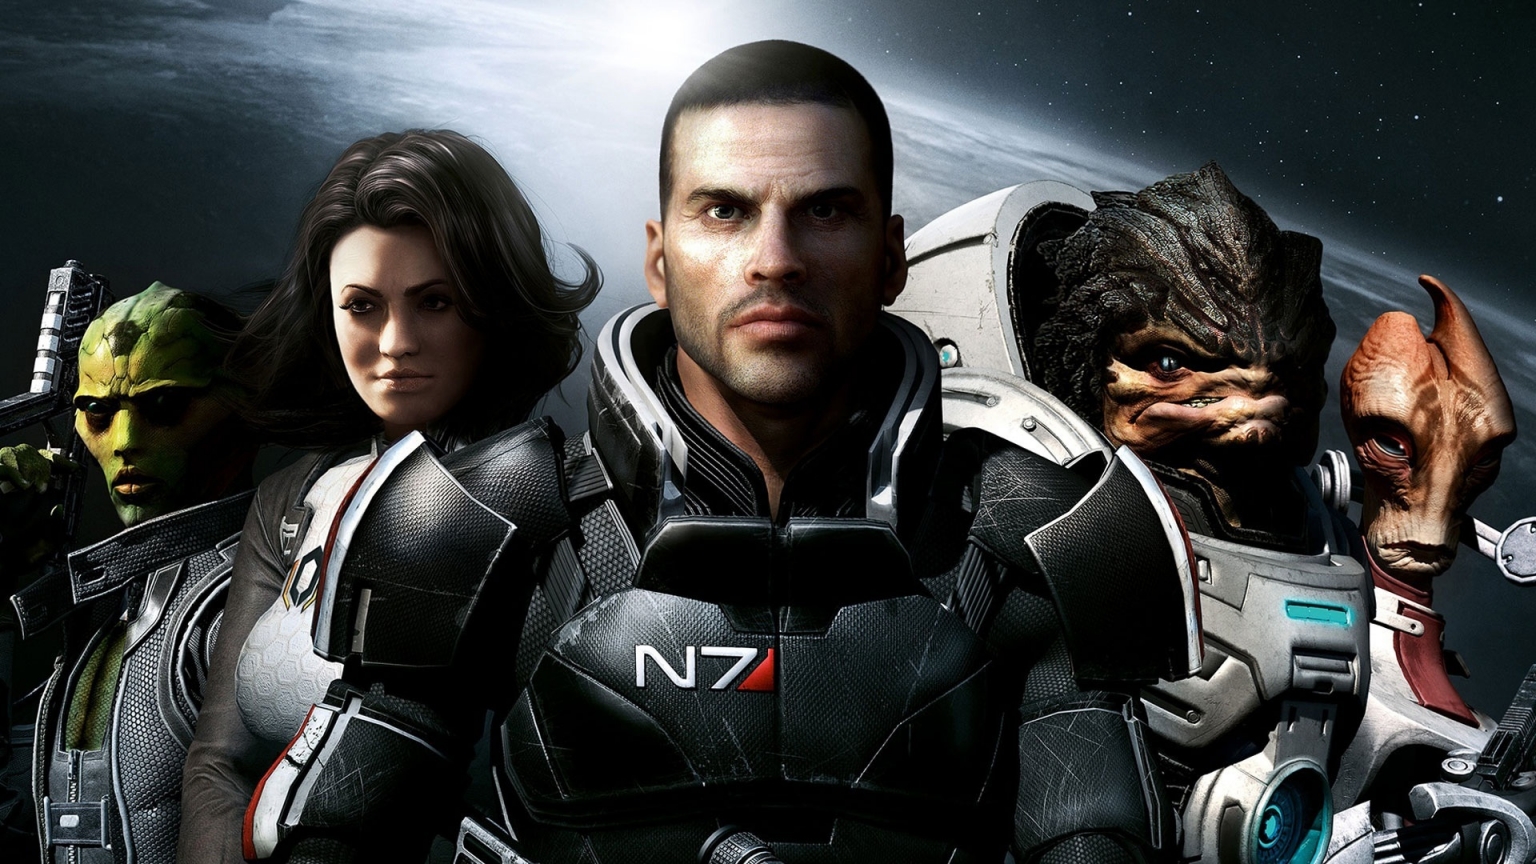 Mass Effect 2 Team for 1536 x 864 HDTV resolution